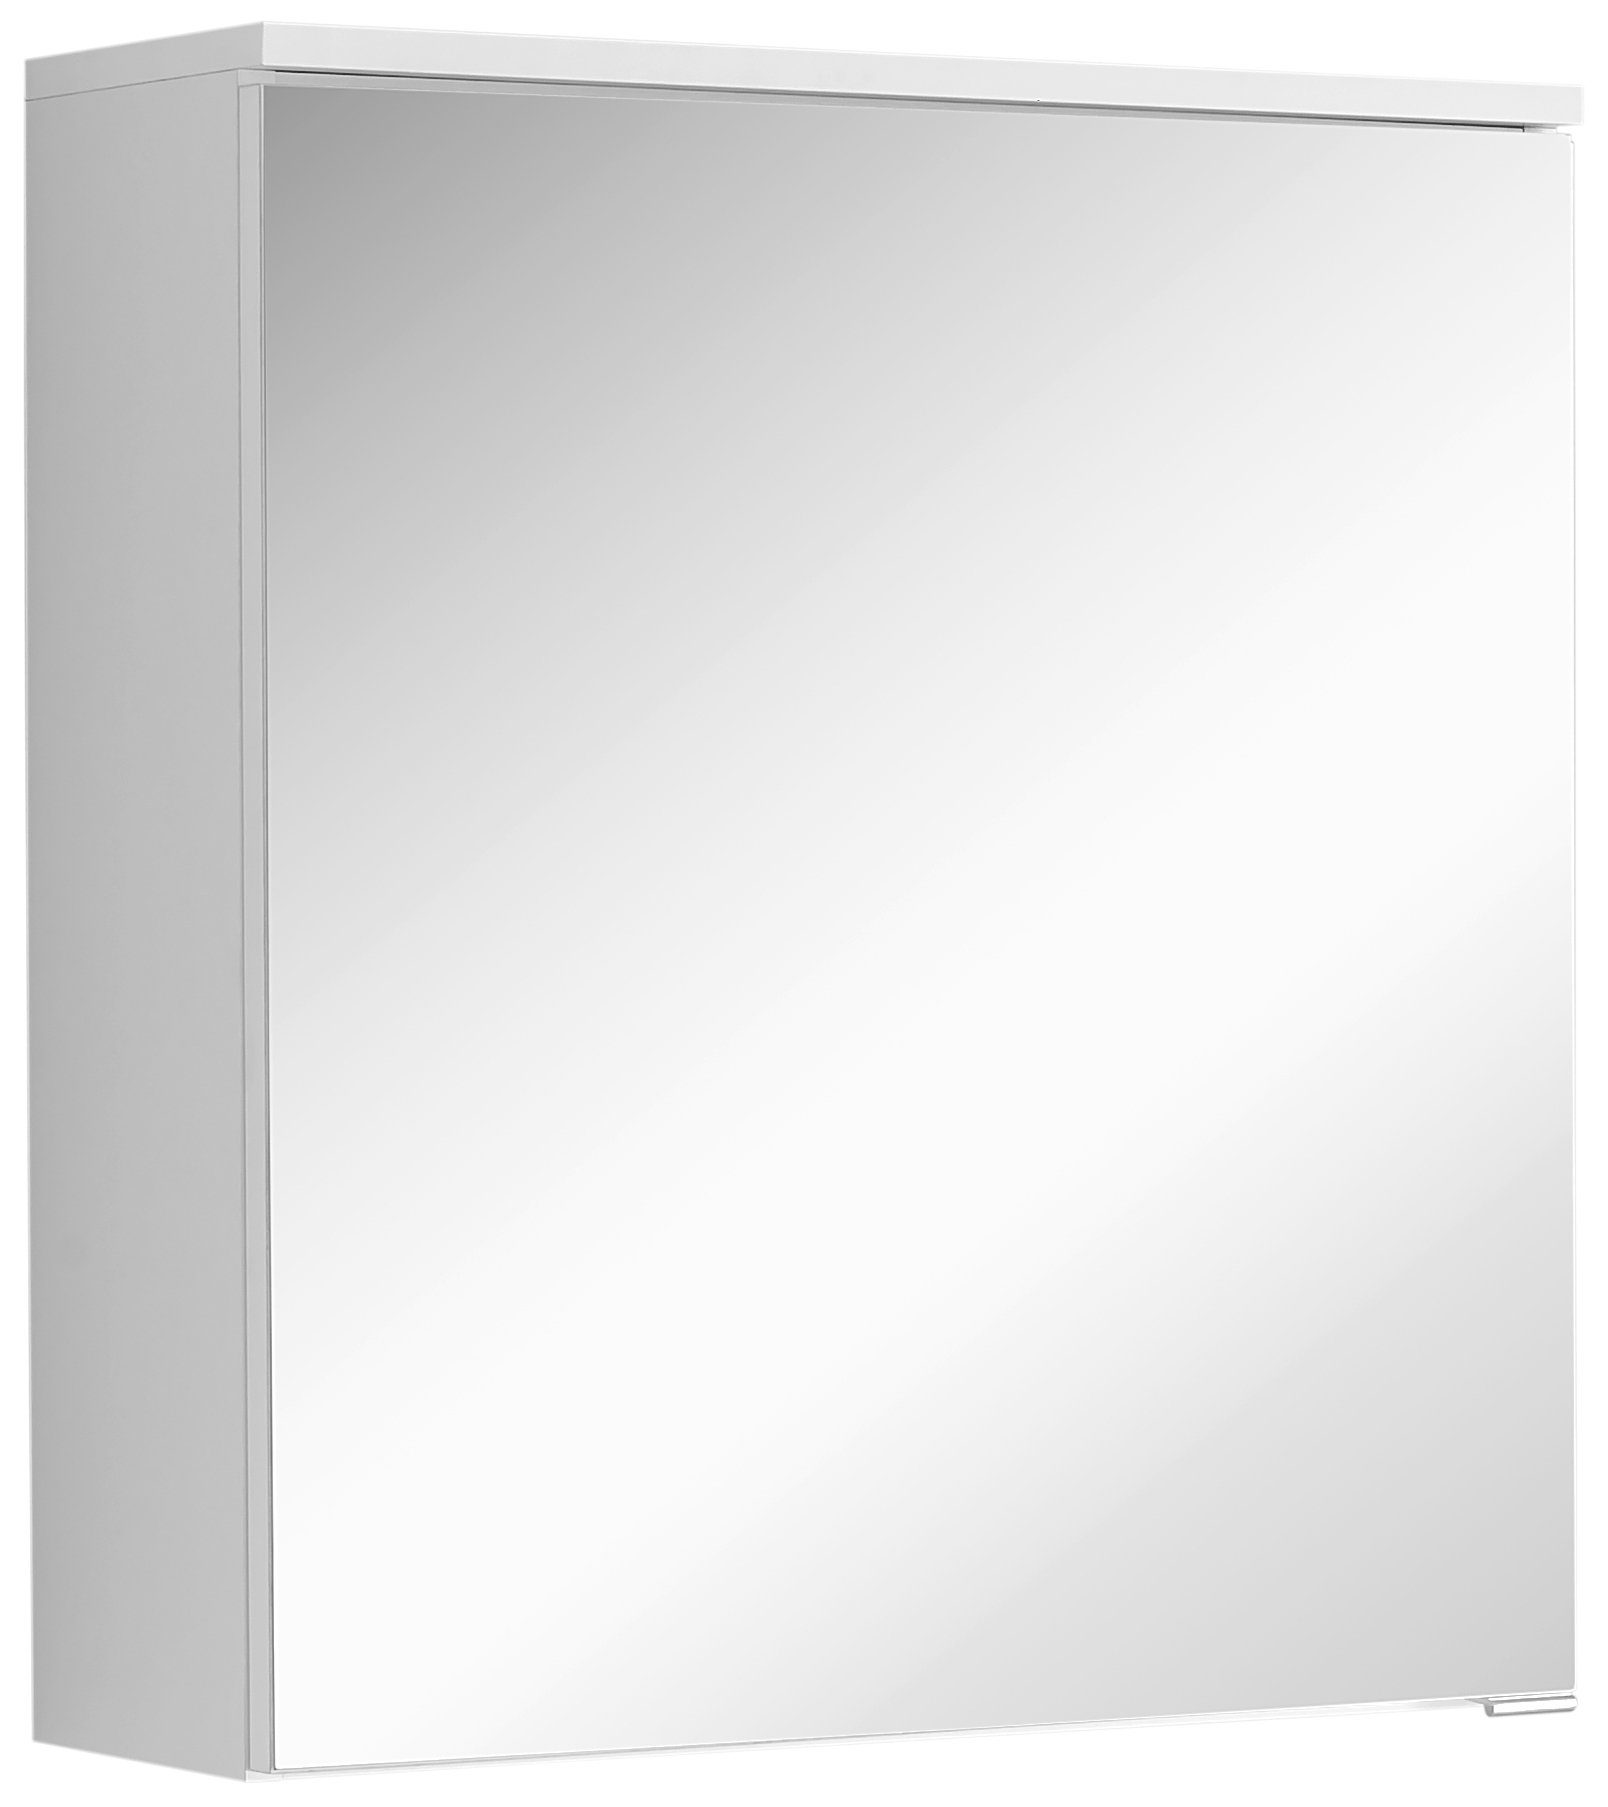 HELD MÖBEL Spiegelschrank Porta 60 cm ohne Beleuchtung weiß, 1 Tür mit  Spiegel